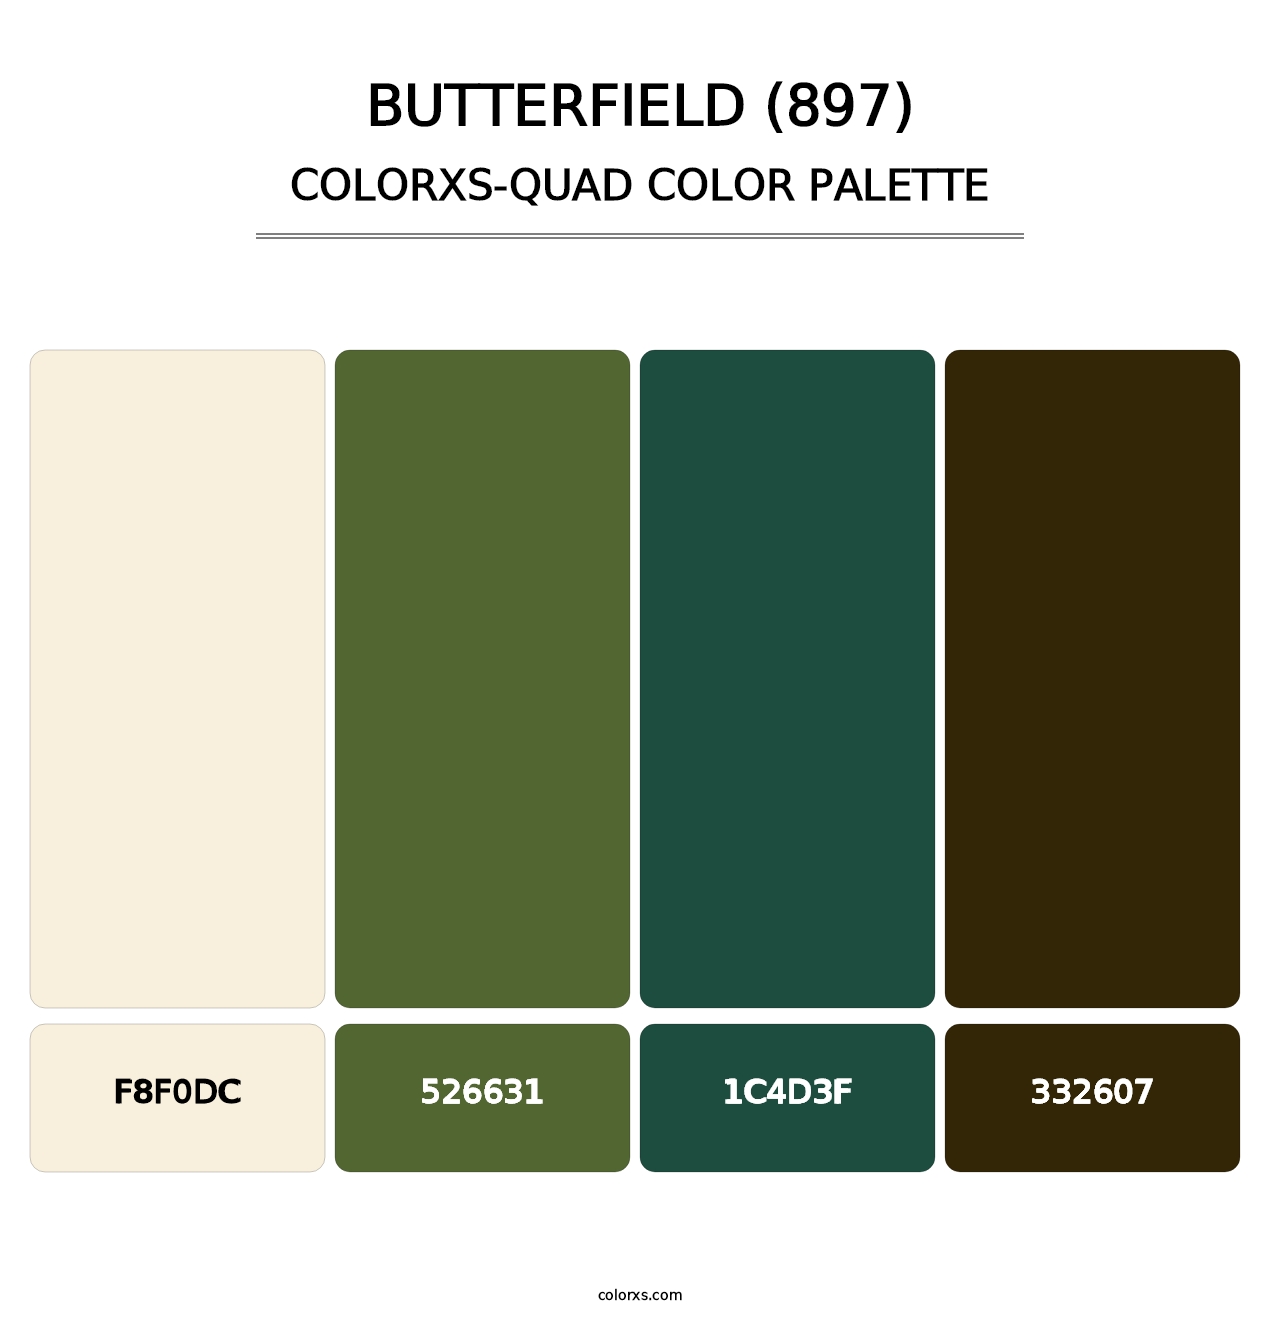 Butterfield (897) - Colorxs Quad Palette